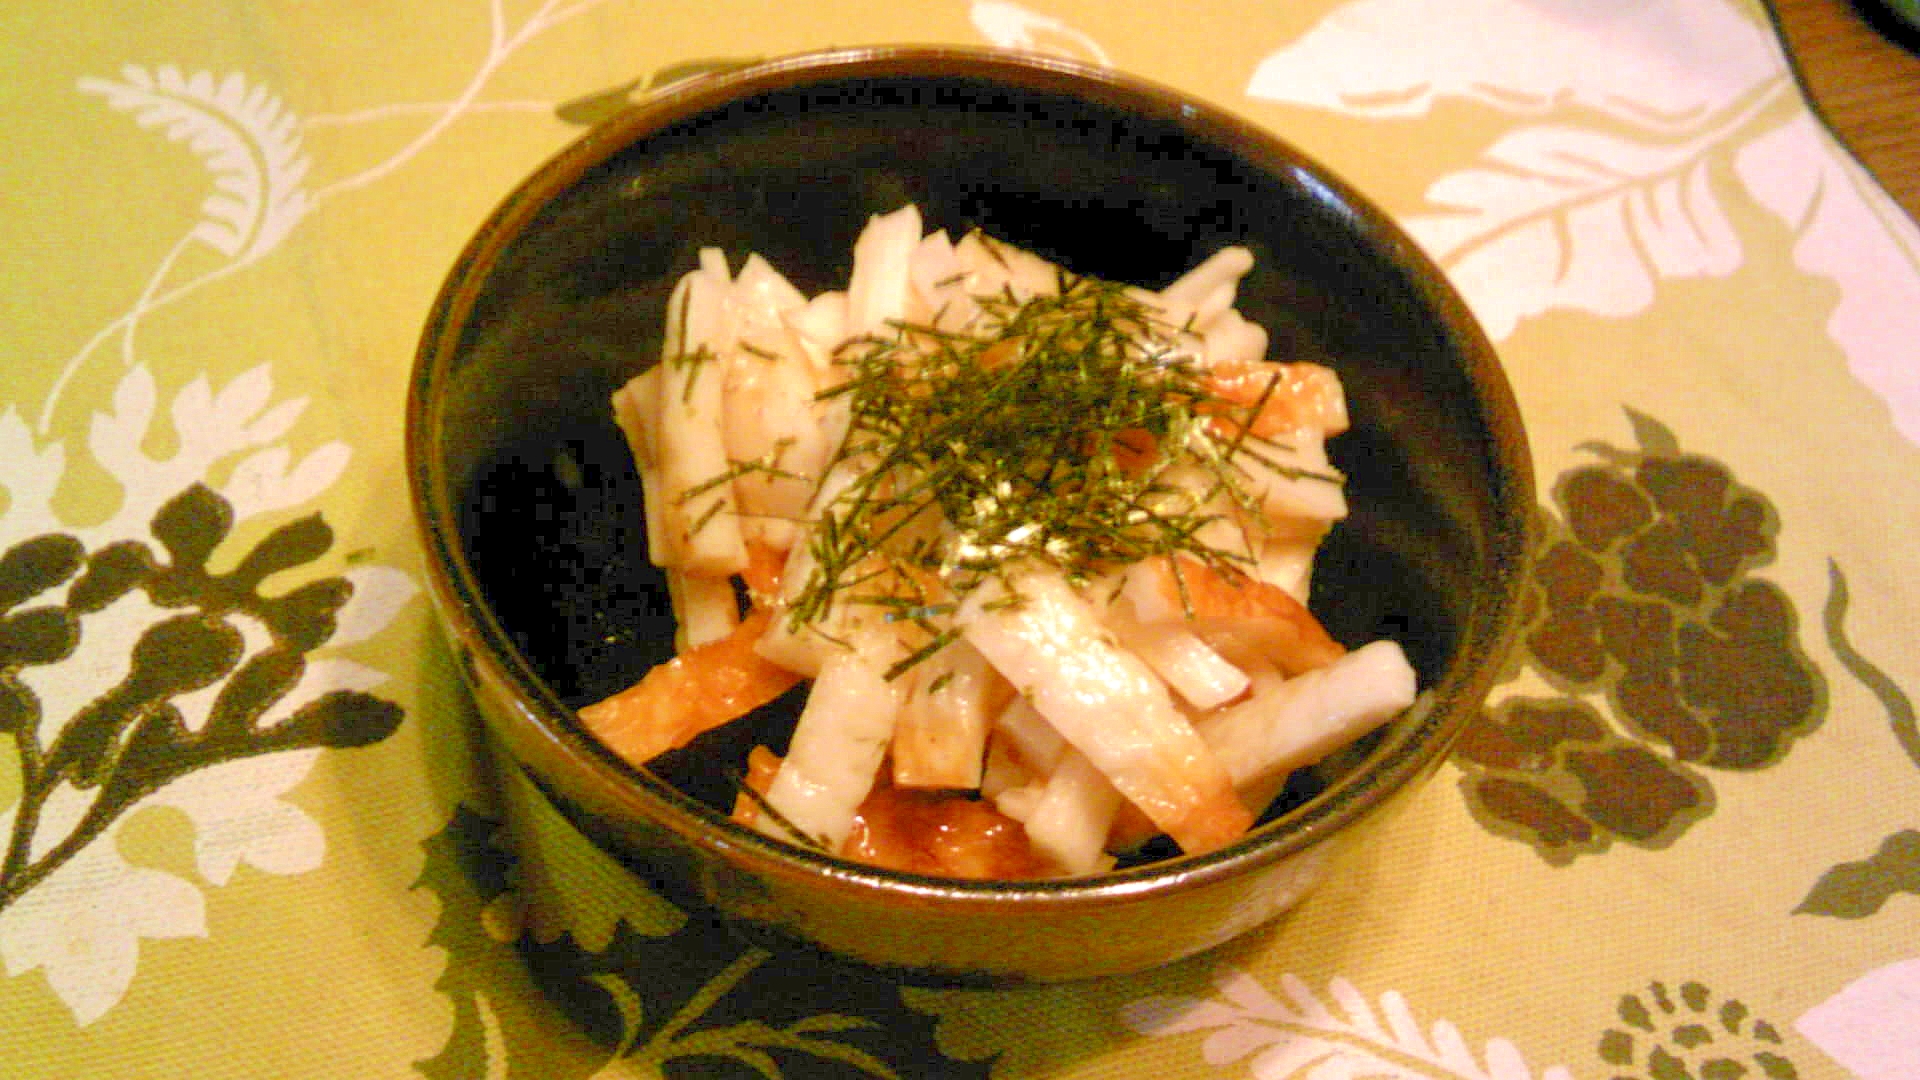 竹輪と長芋の酢の物